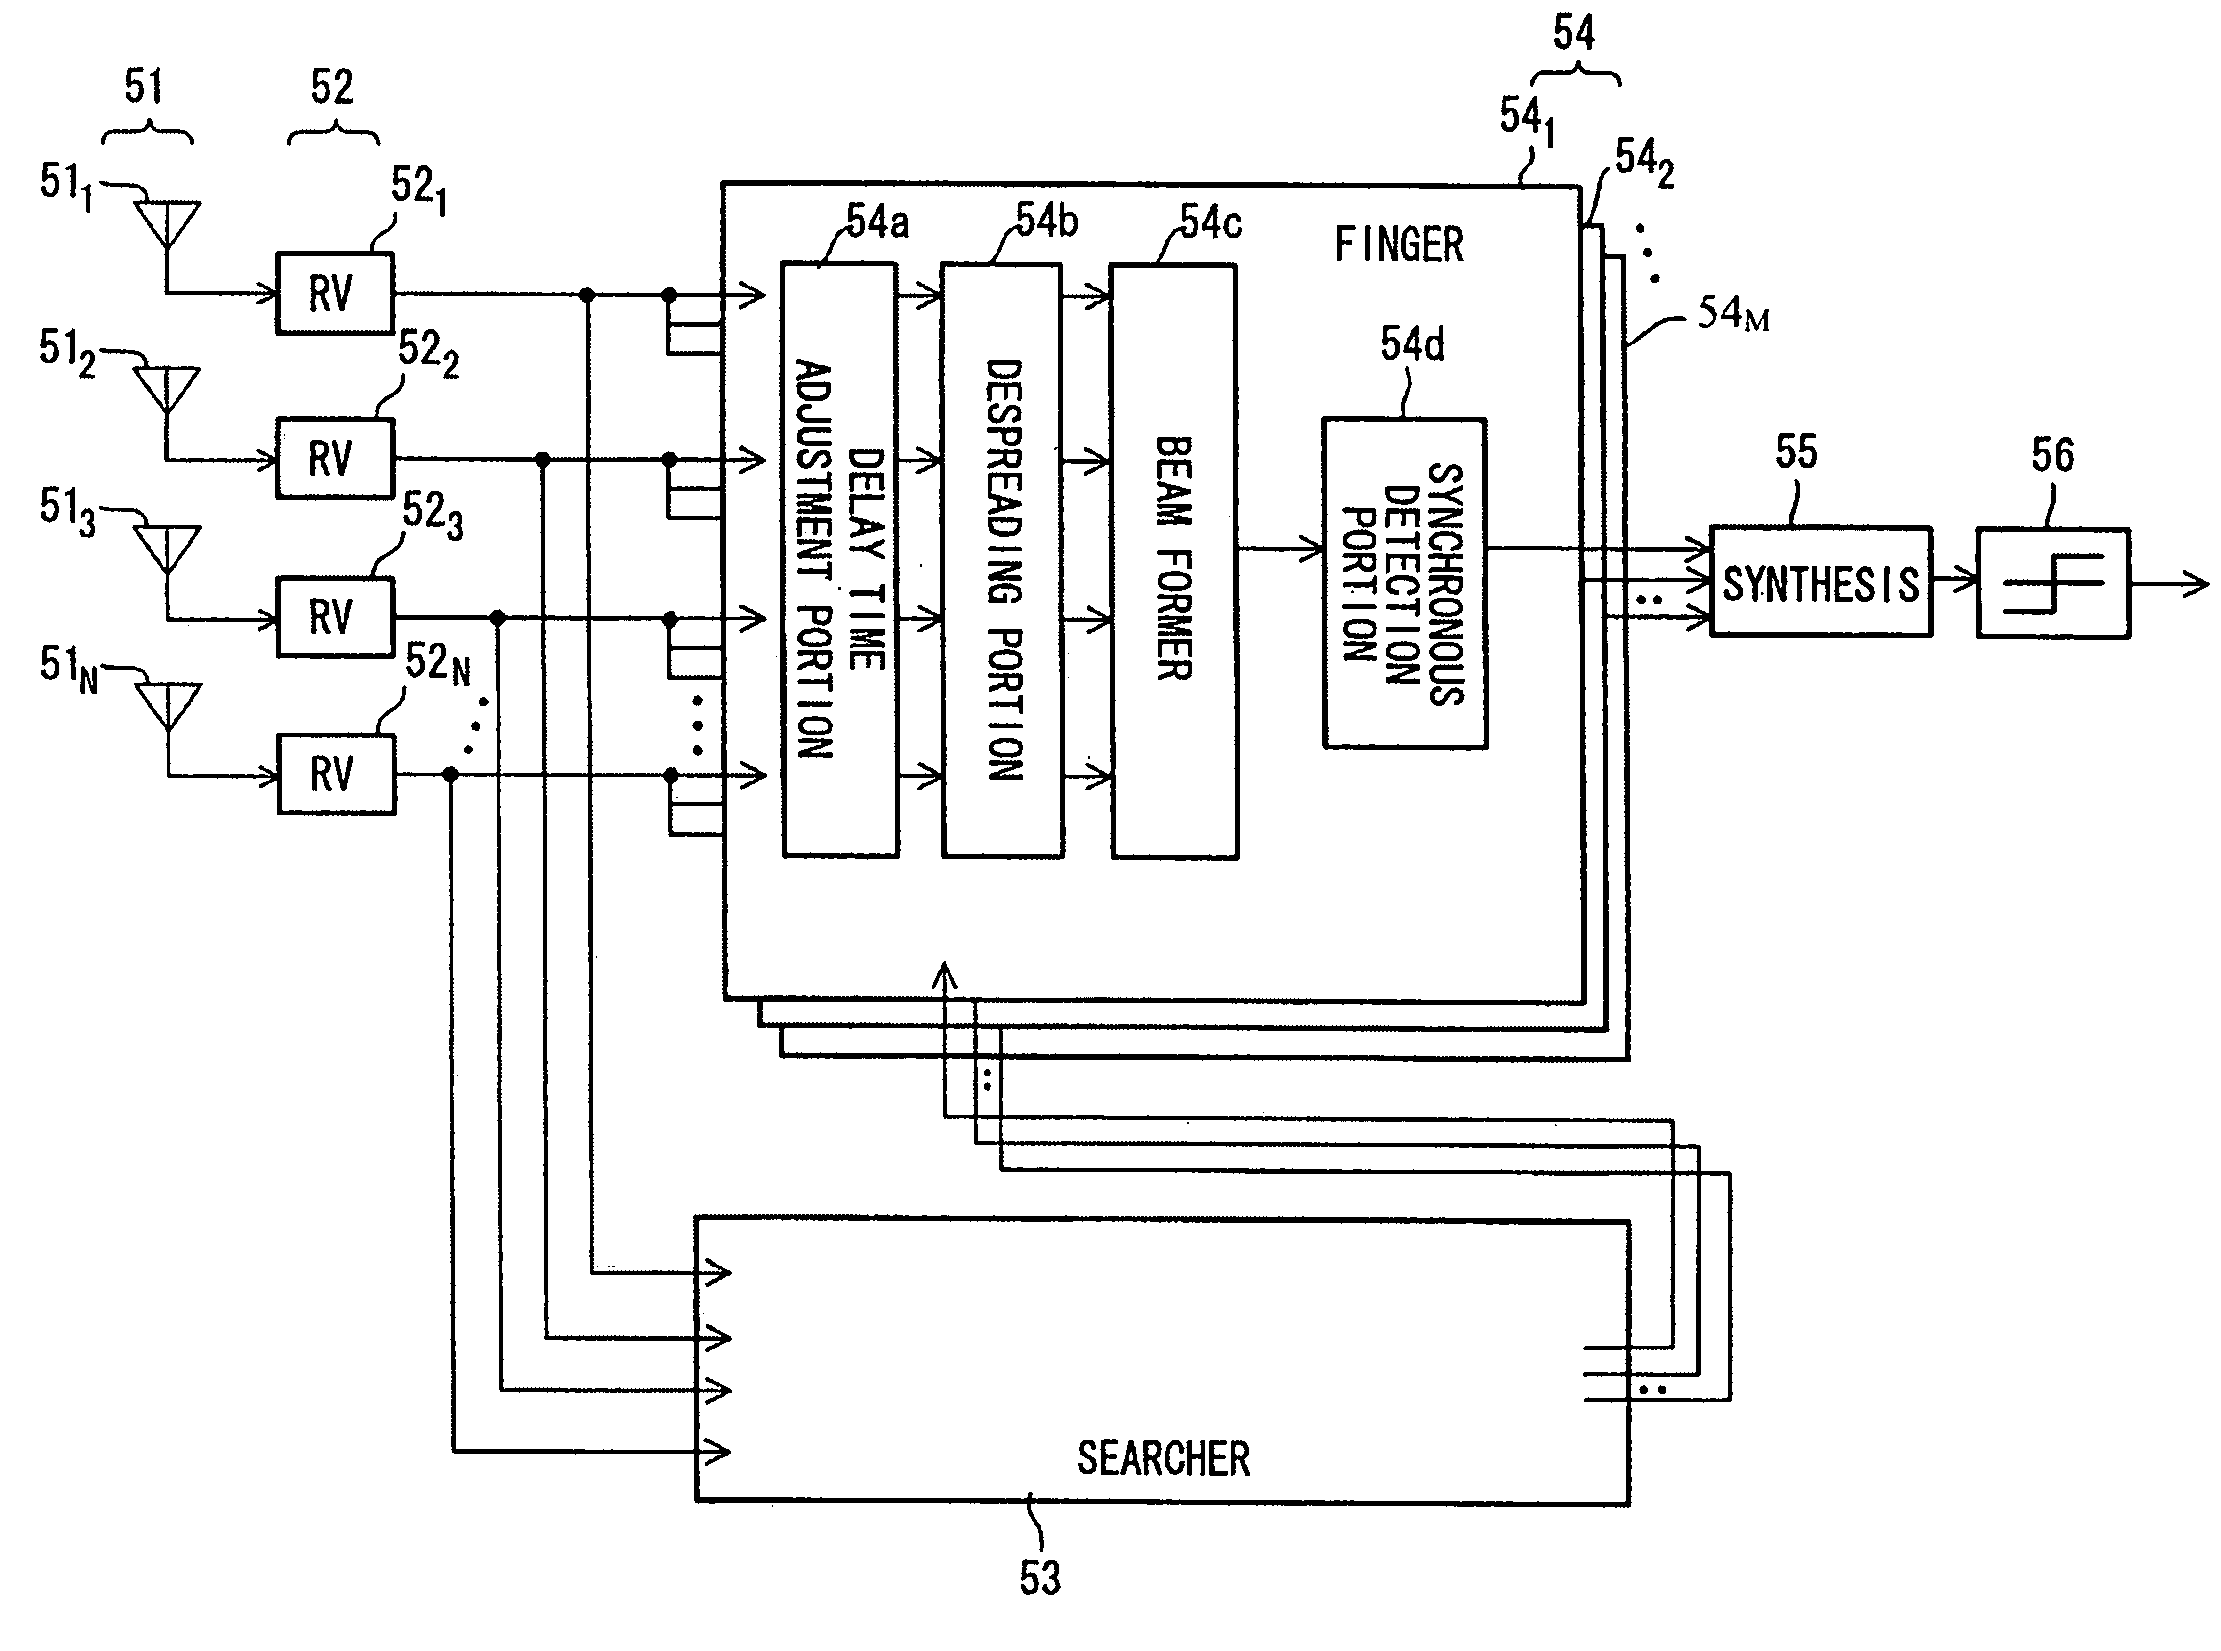 CDMA receiver, and searcher in a CDMA receiver